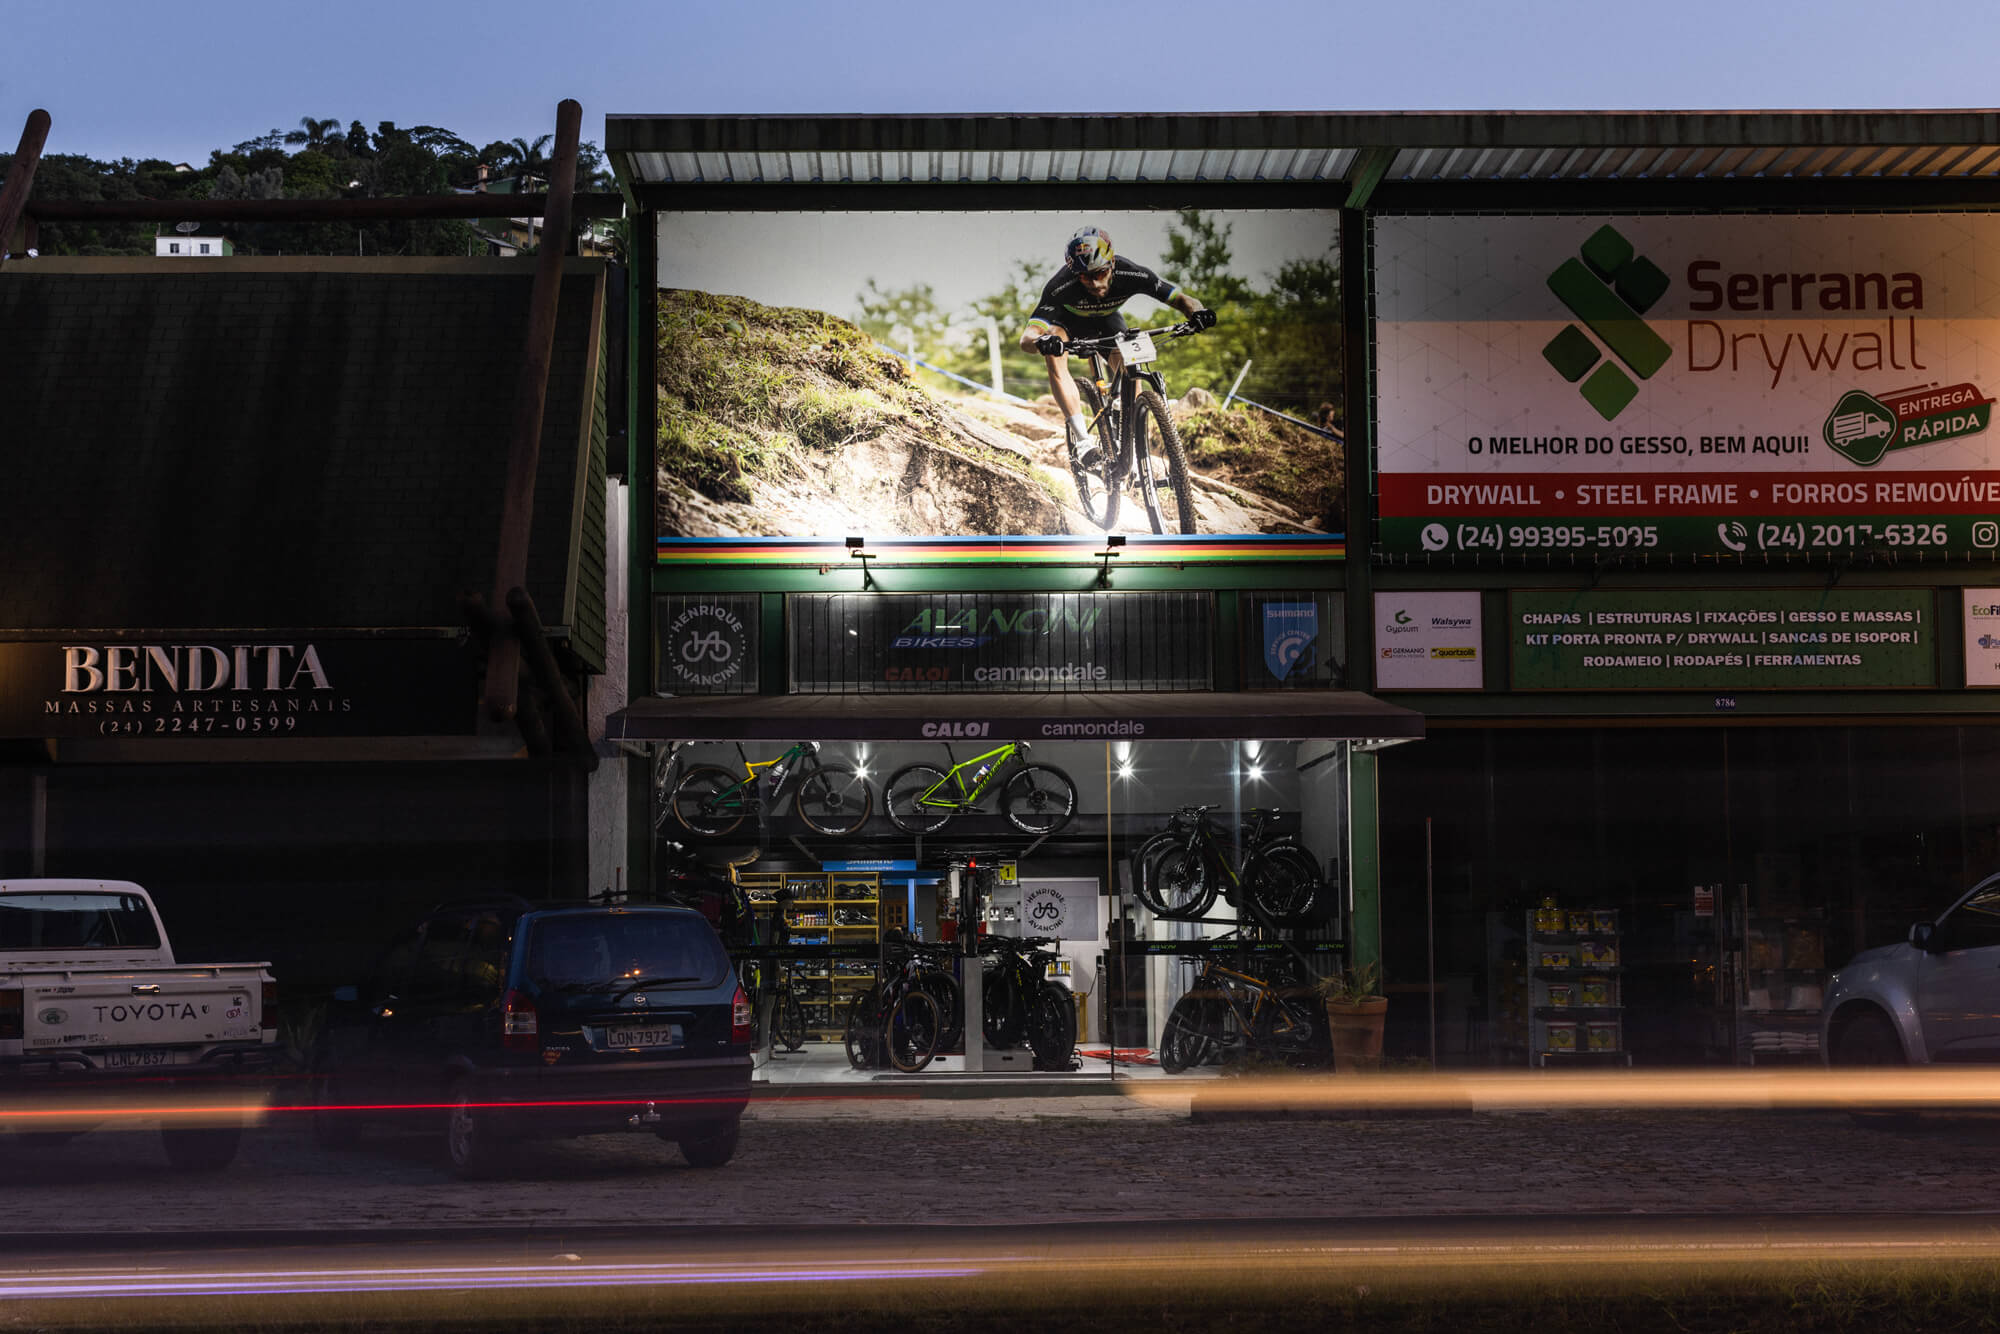 Henrique Avancinis familieeide sykkelbutikk i Brasil